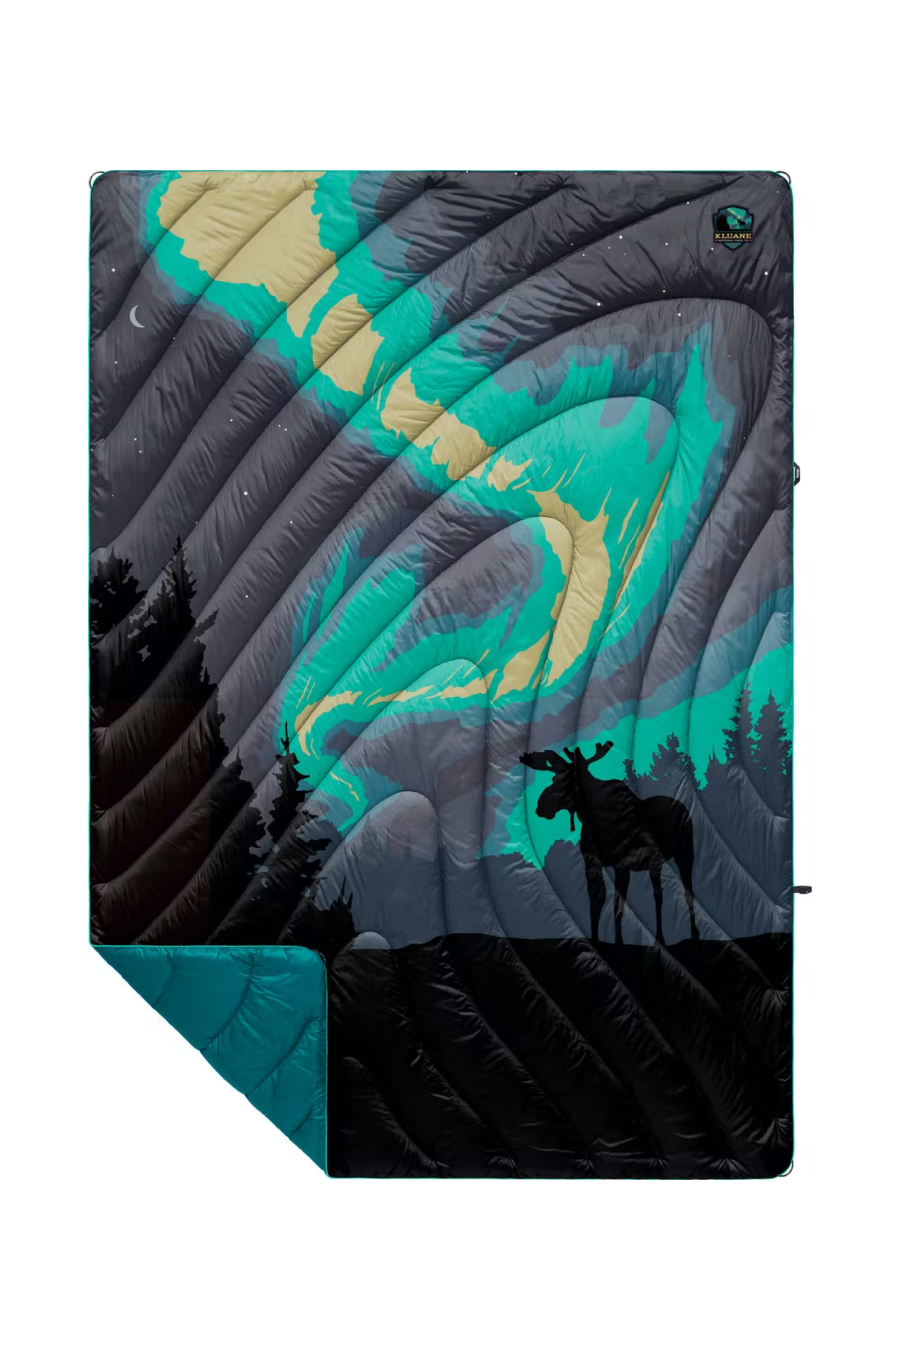 Rumpl Original Puffy Printed Blanket - Canadian National Park Kluane (1P)